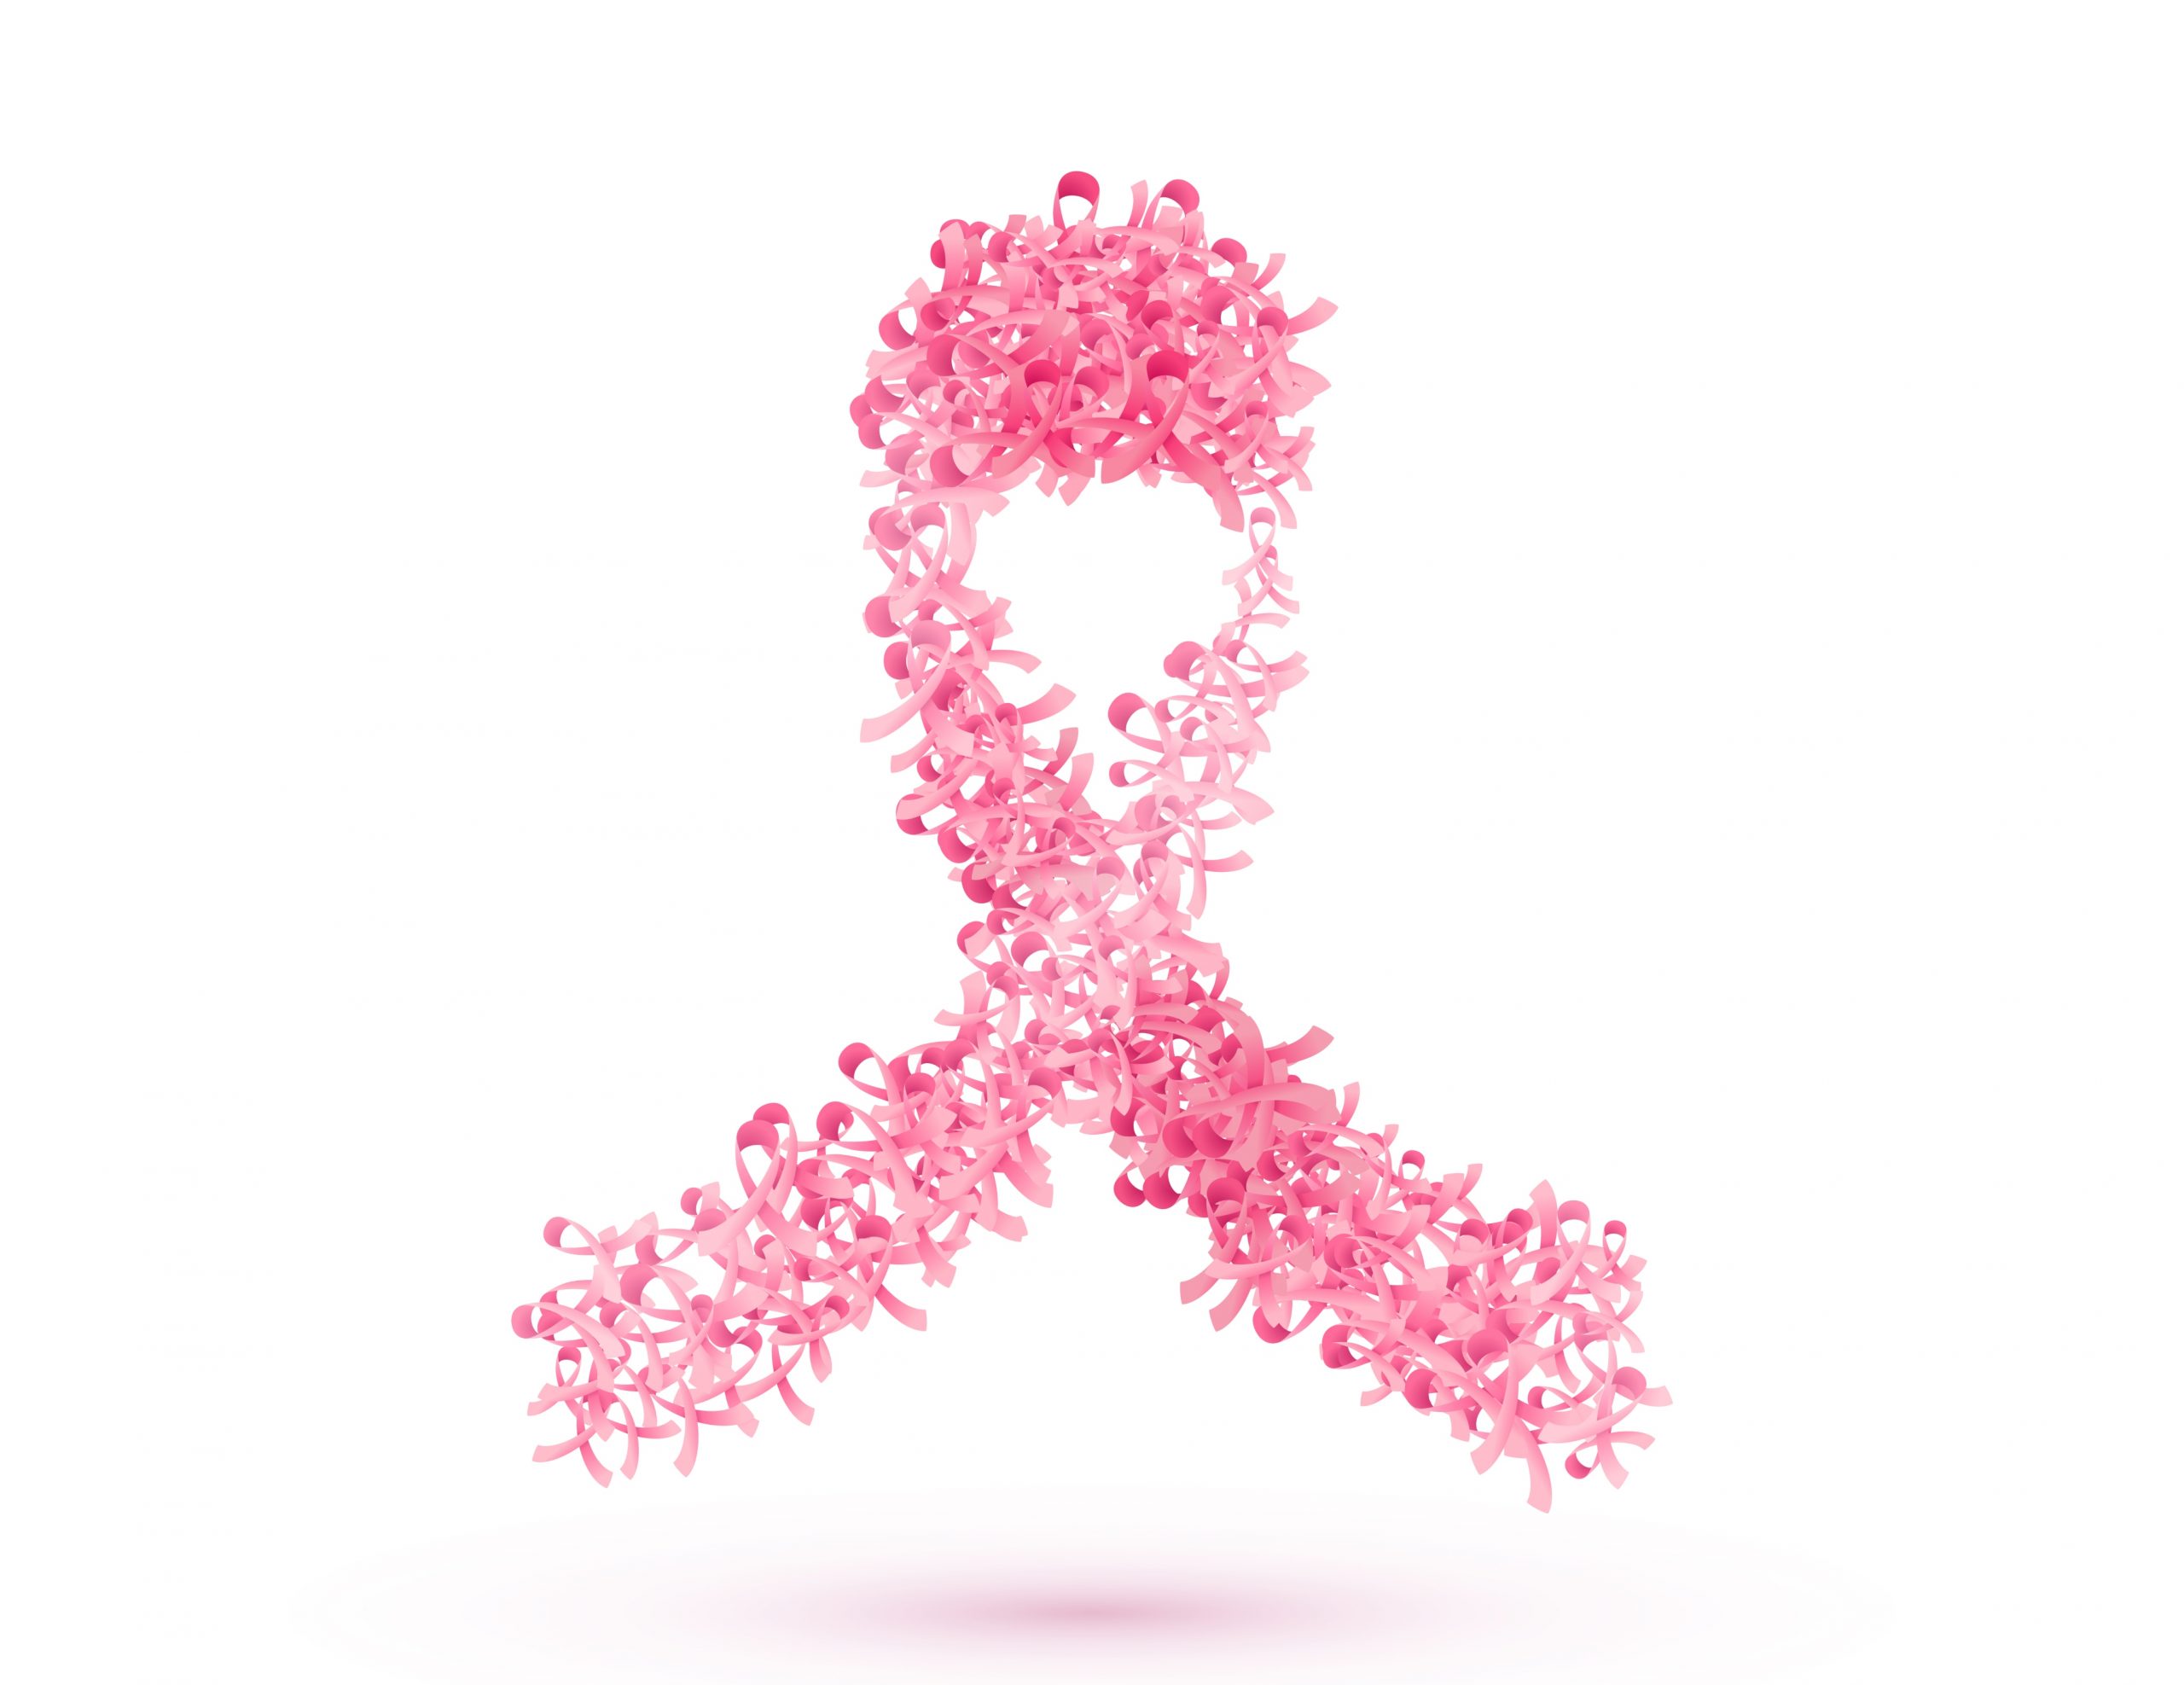 Datos, síntomas y cómo prevenir el cáncer de mama